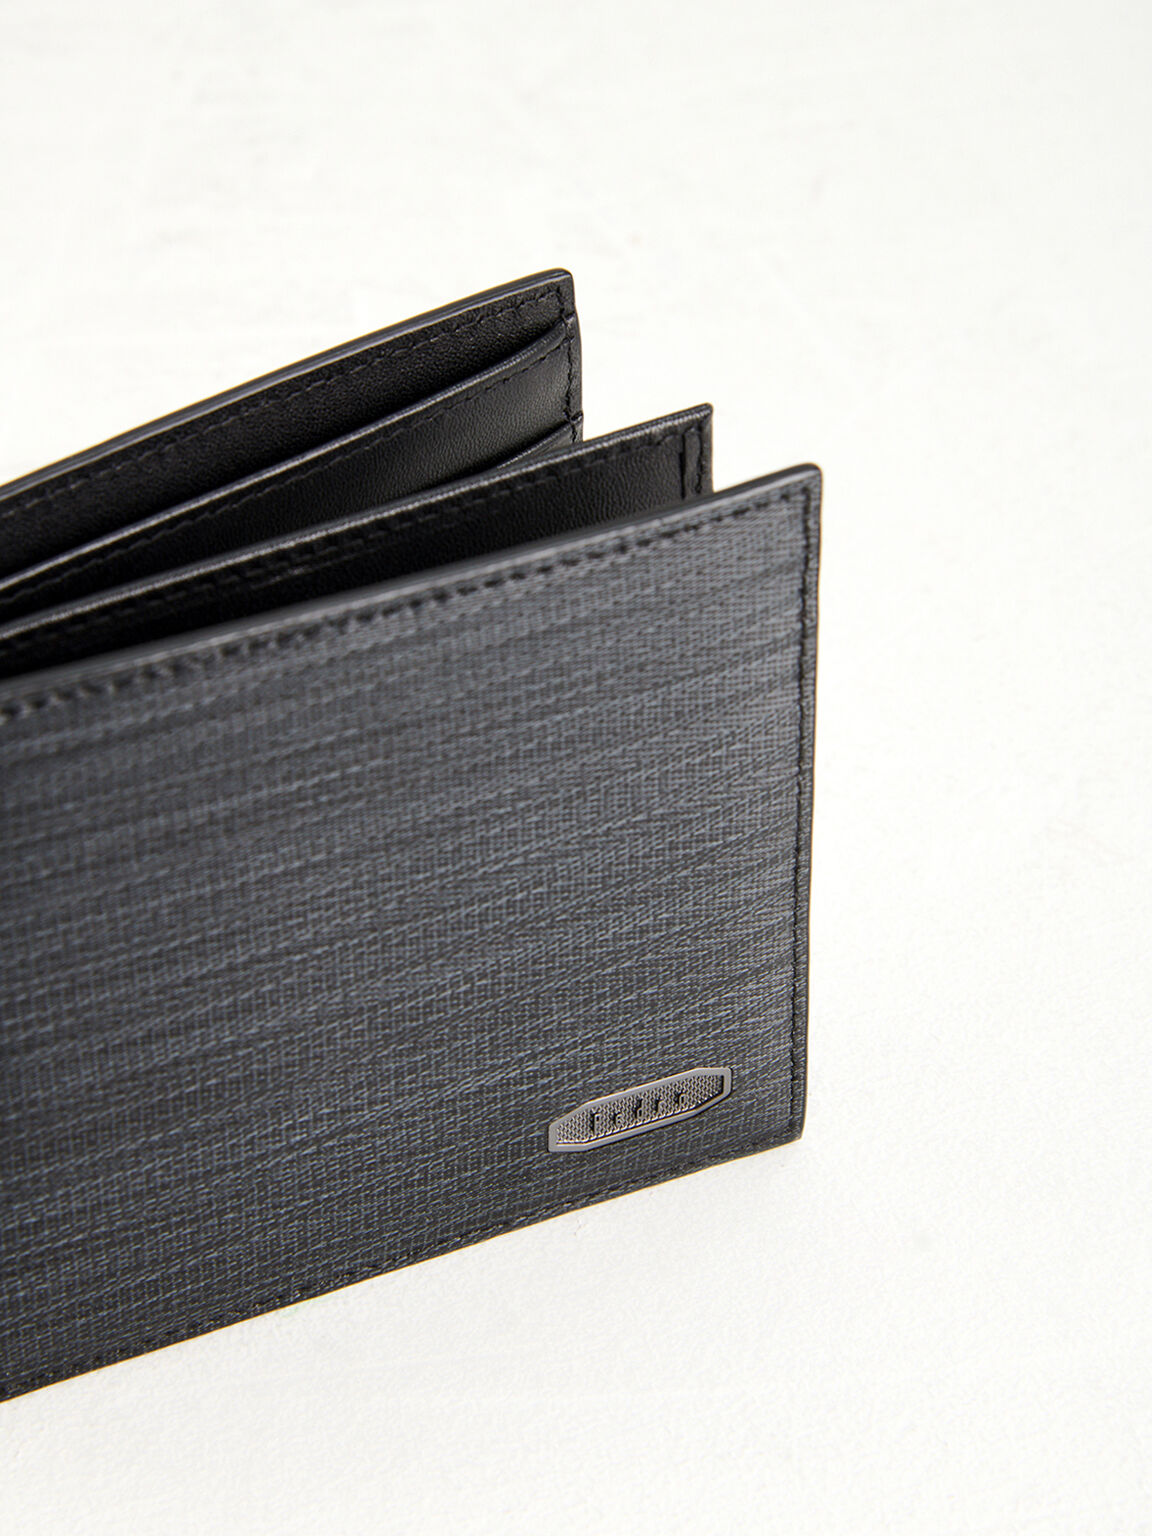 Embossed Leather Bi-Fold Wallet, Black, hi-res